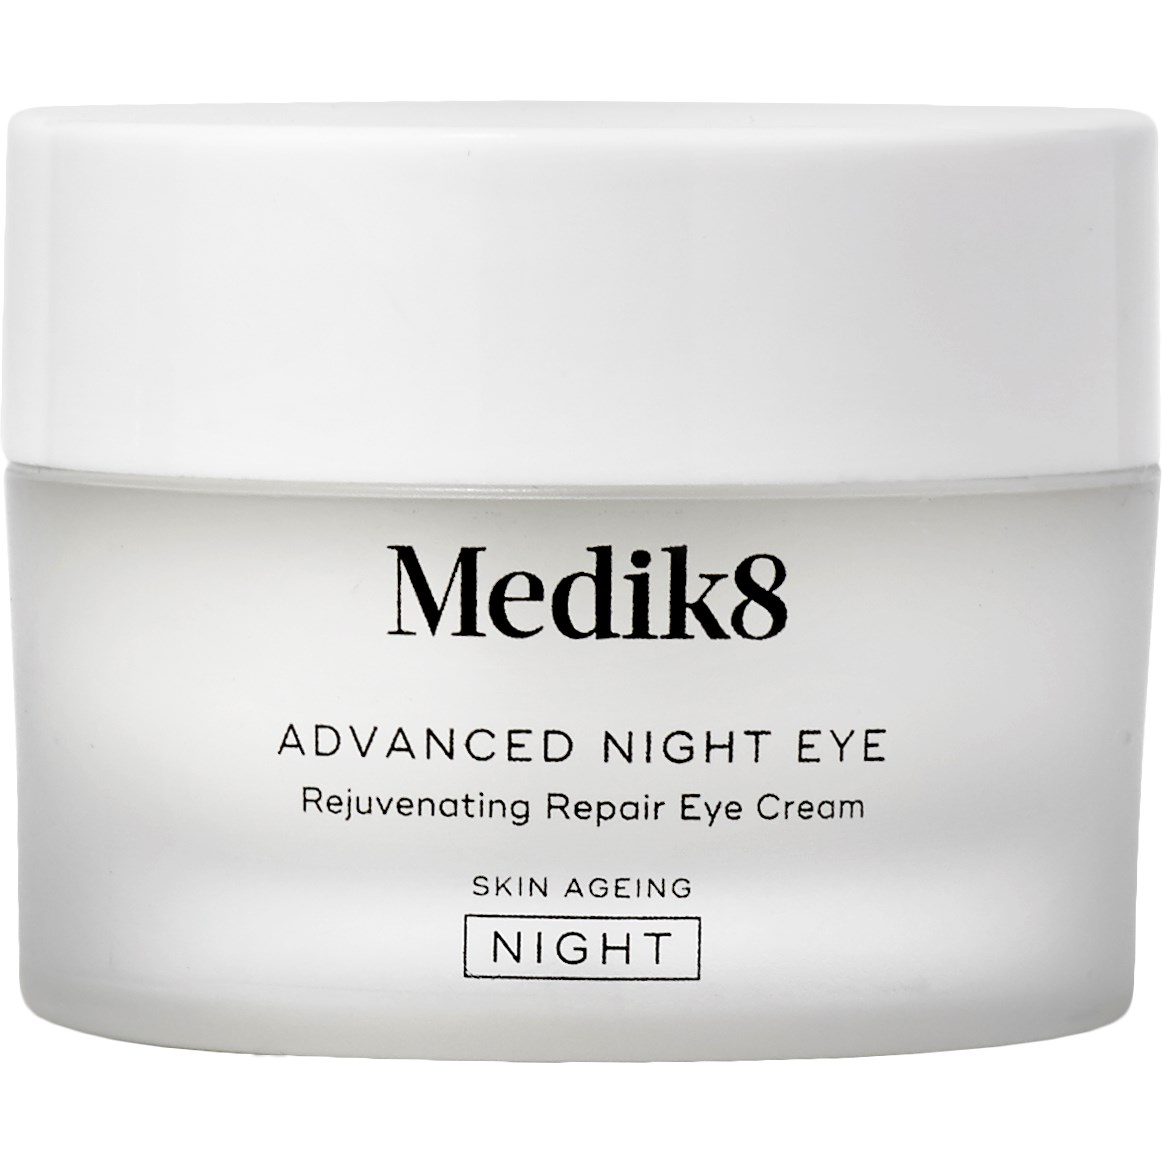 Bilde av Medik8 Skin Ageing Advanced Night Eye 15 Ml